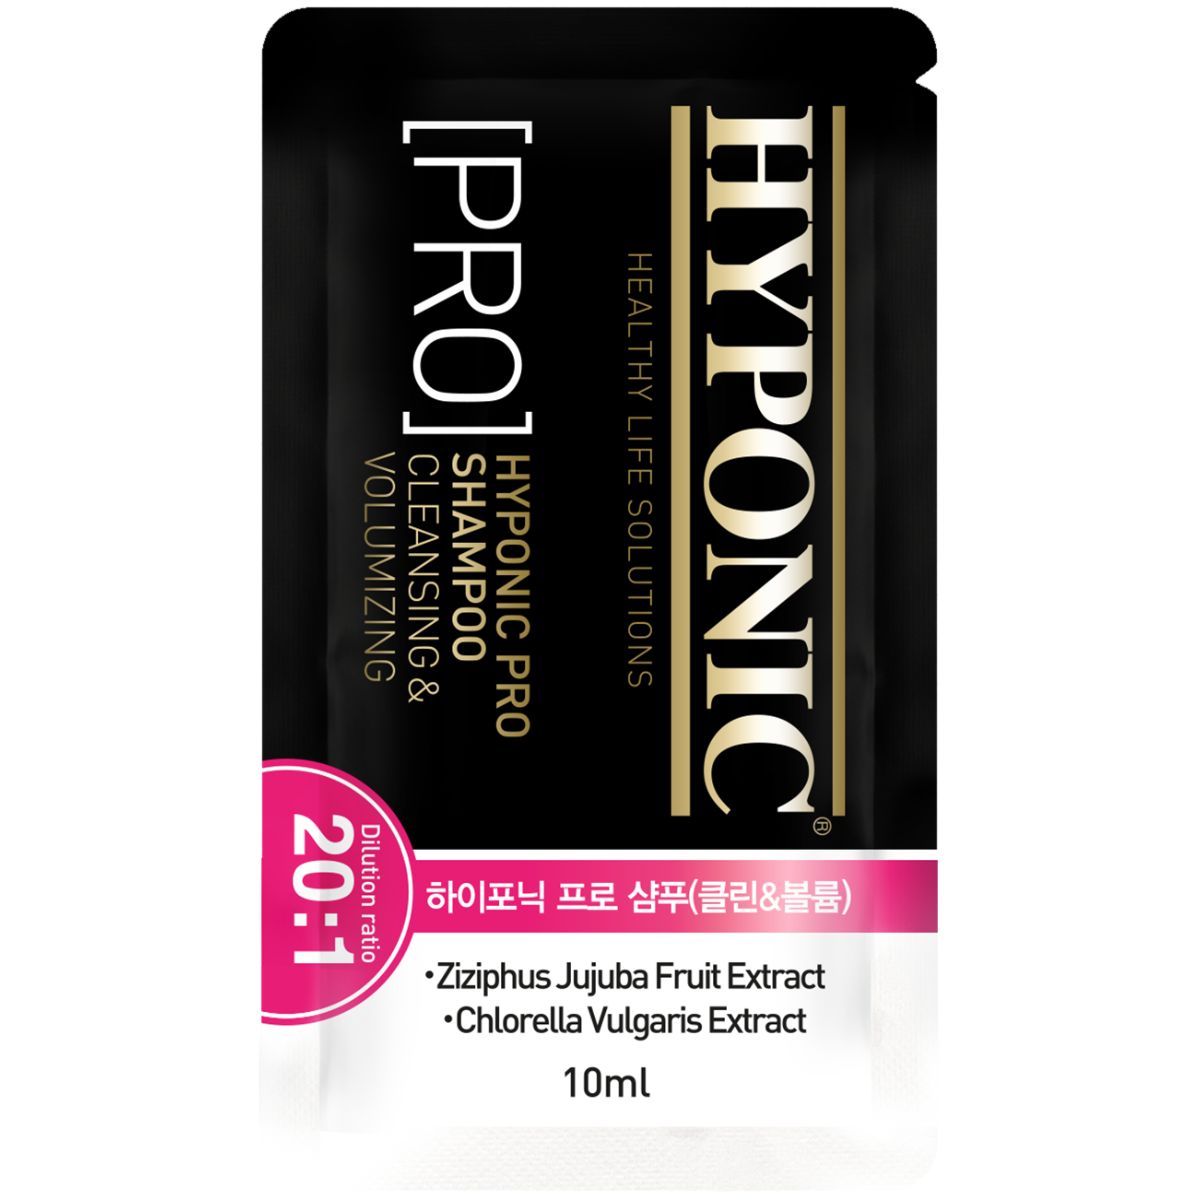 Hyponic Pro Shampoo, Cleansing & Volumizing